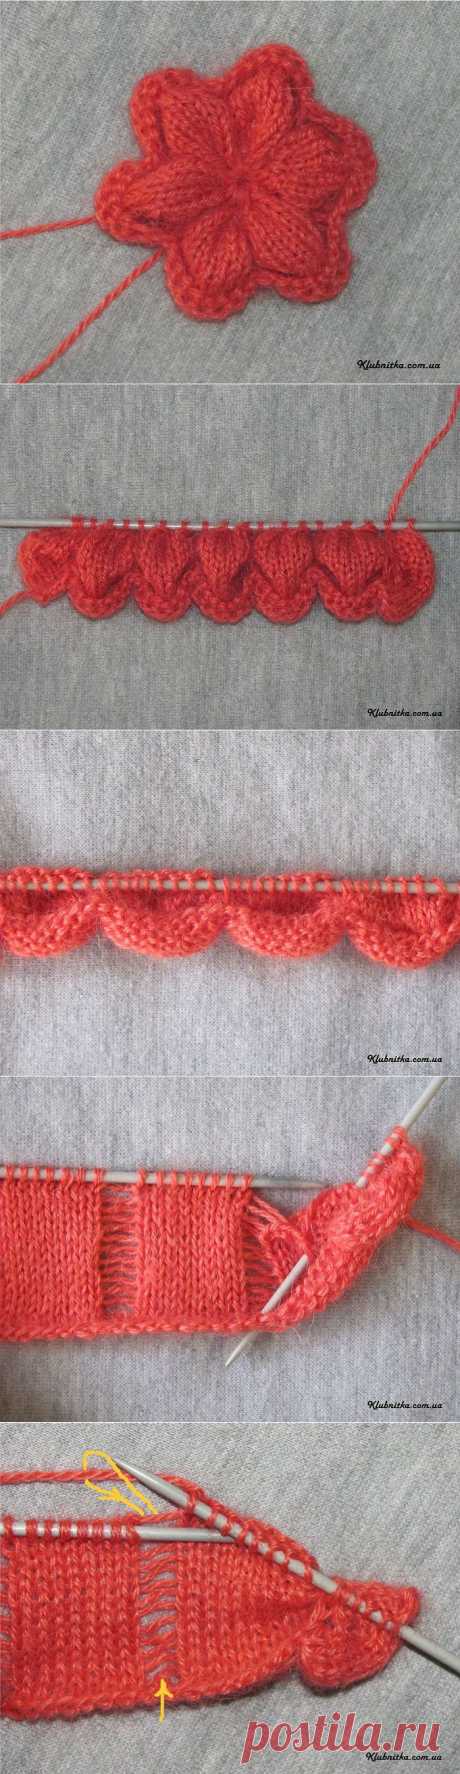 Вязание-спицы &gt;Мастер-класс по вязанию цветов спицами